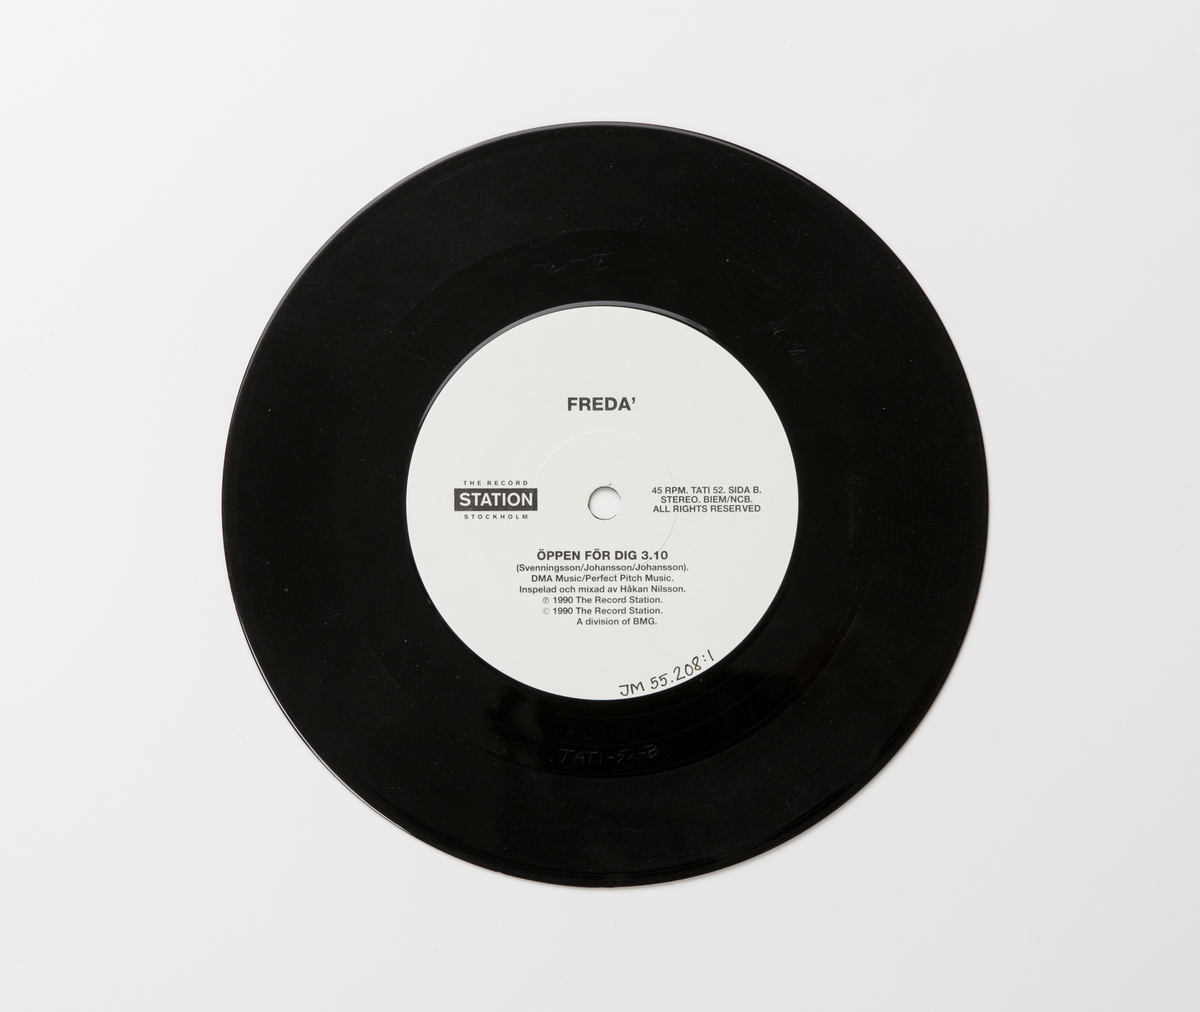 Singel-skiva av svart vinyl med vit pappersetikett, i omslag av papper. Framsidan av omslaget har ett färgfotografi av gruppen.

Innehåll
Sida A: Allt man kan önska sig
Sida B: Öppen för dig

JM 55208:1, Skiva
JM 55208:2, Omslag